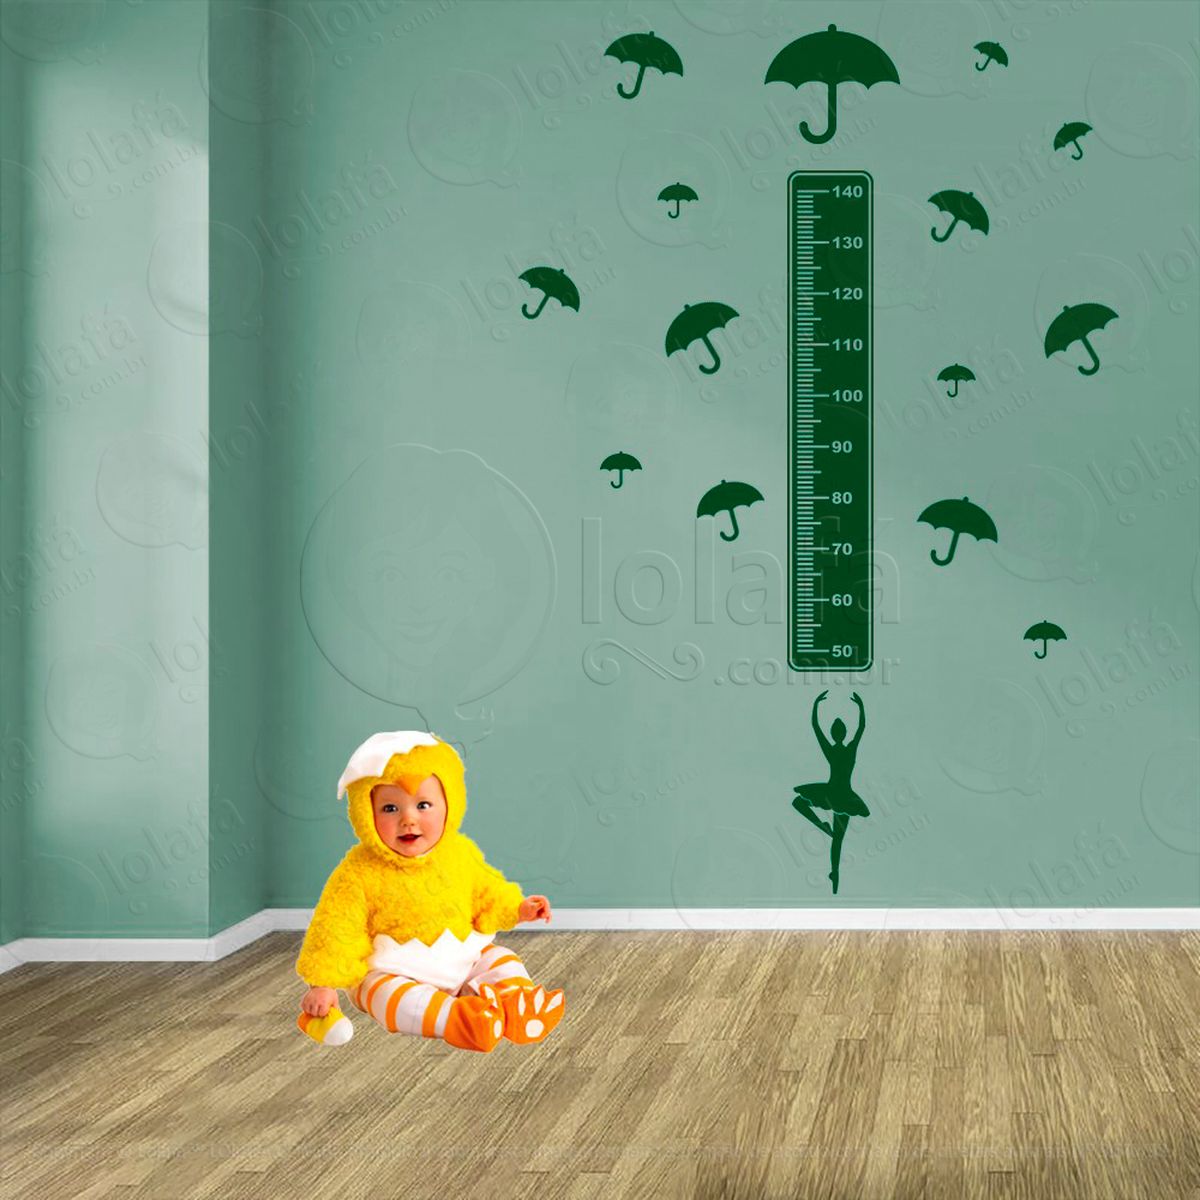 balé e guarda-chuvas adesivo régua de crescimento infantil, medidor de altura para quarto, porta e parede - mod:520